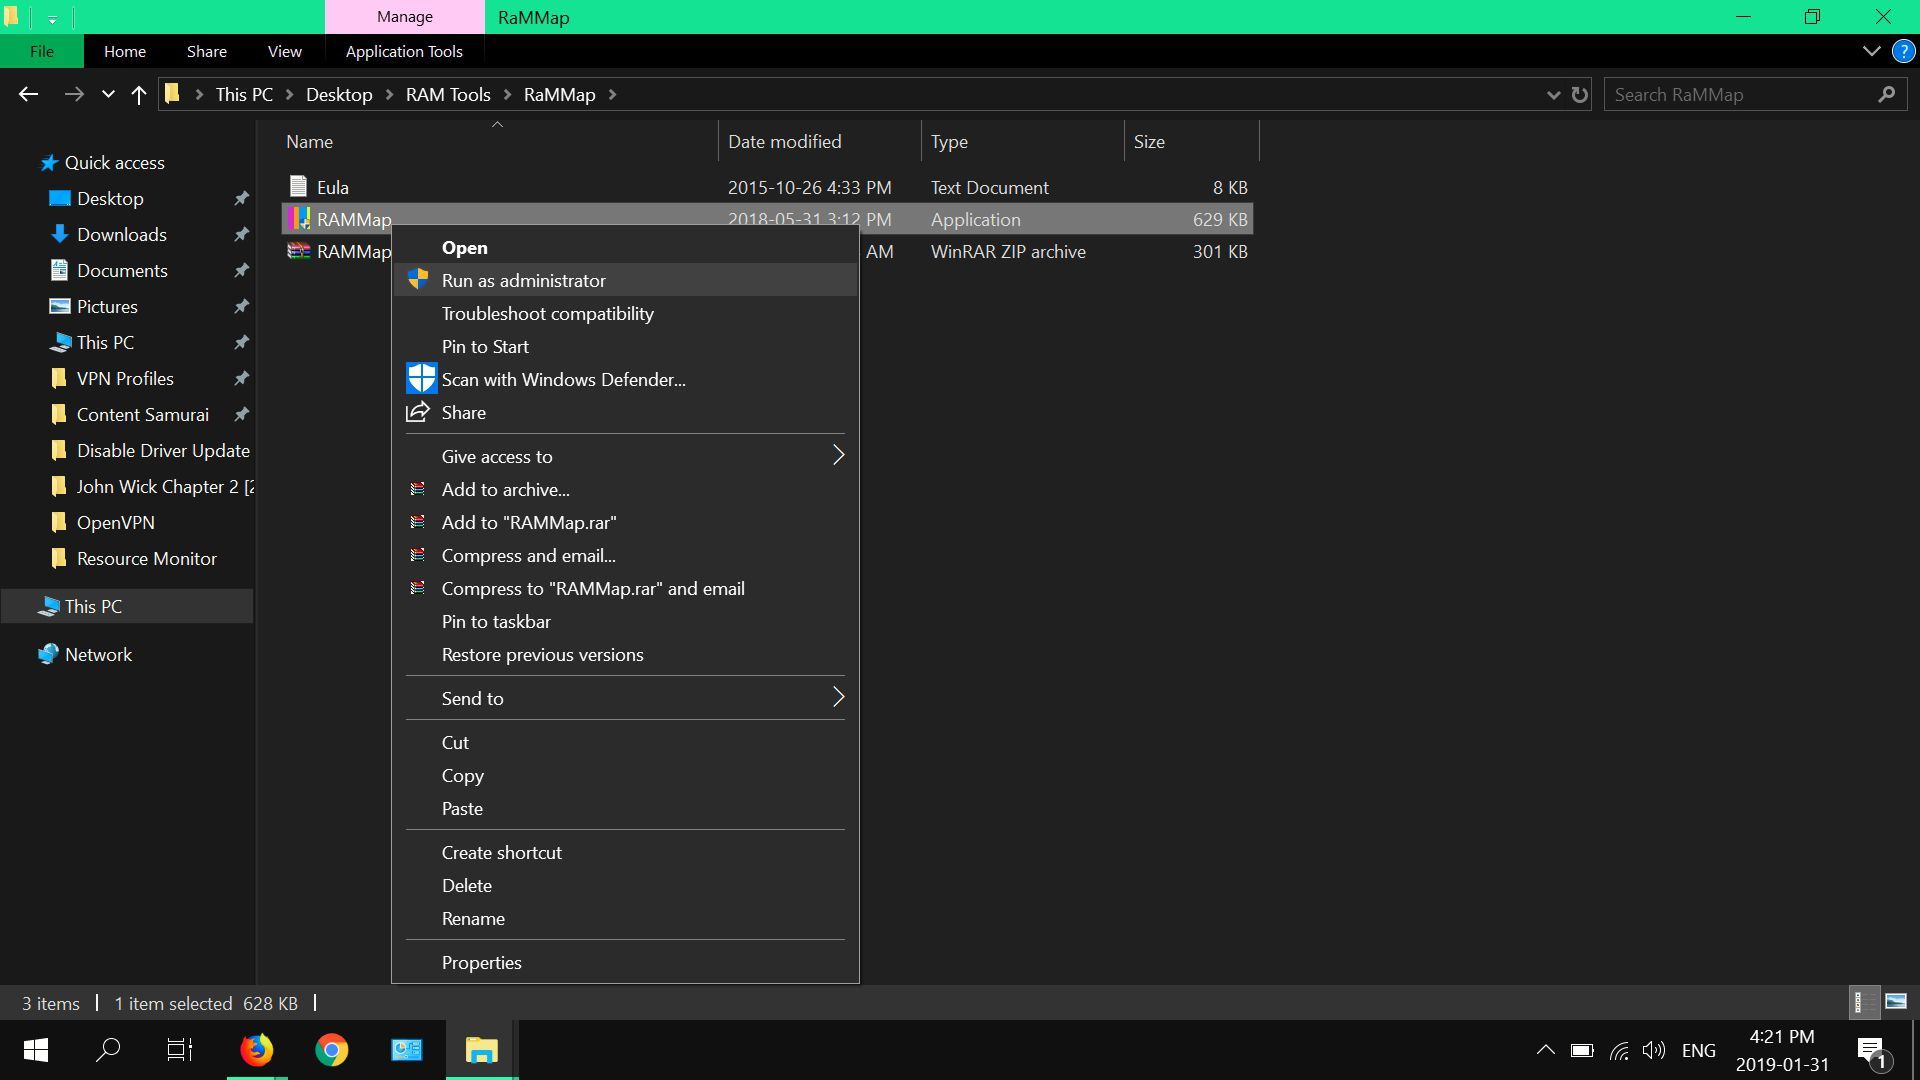 Снимок экрана с контекстным меню RaMMaps в Windows 10.